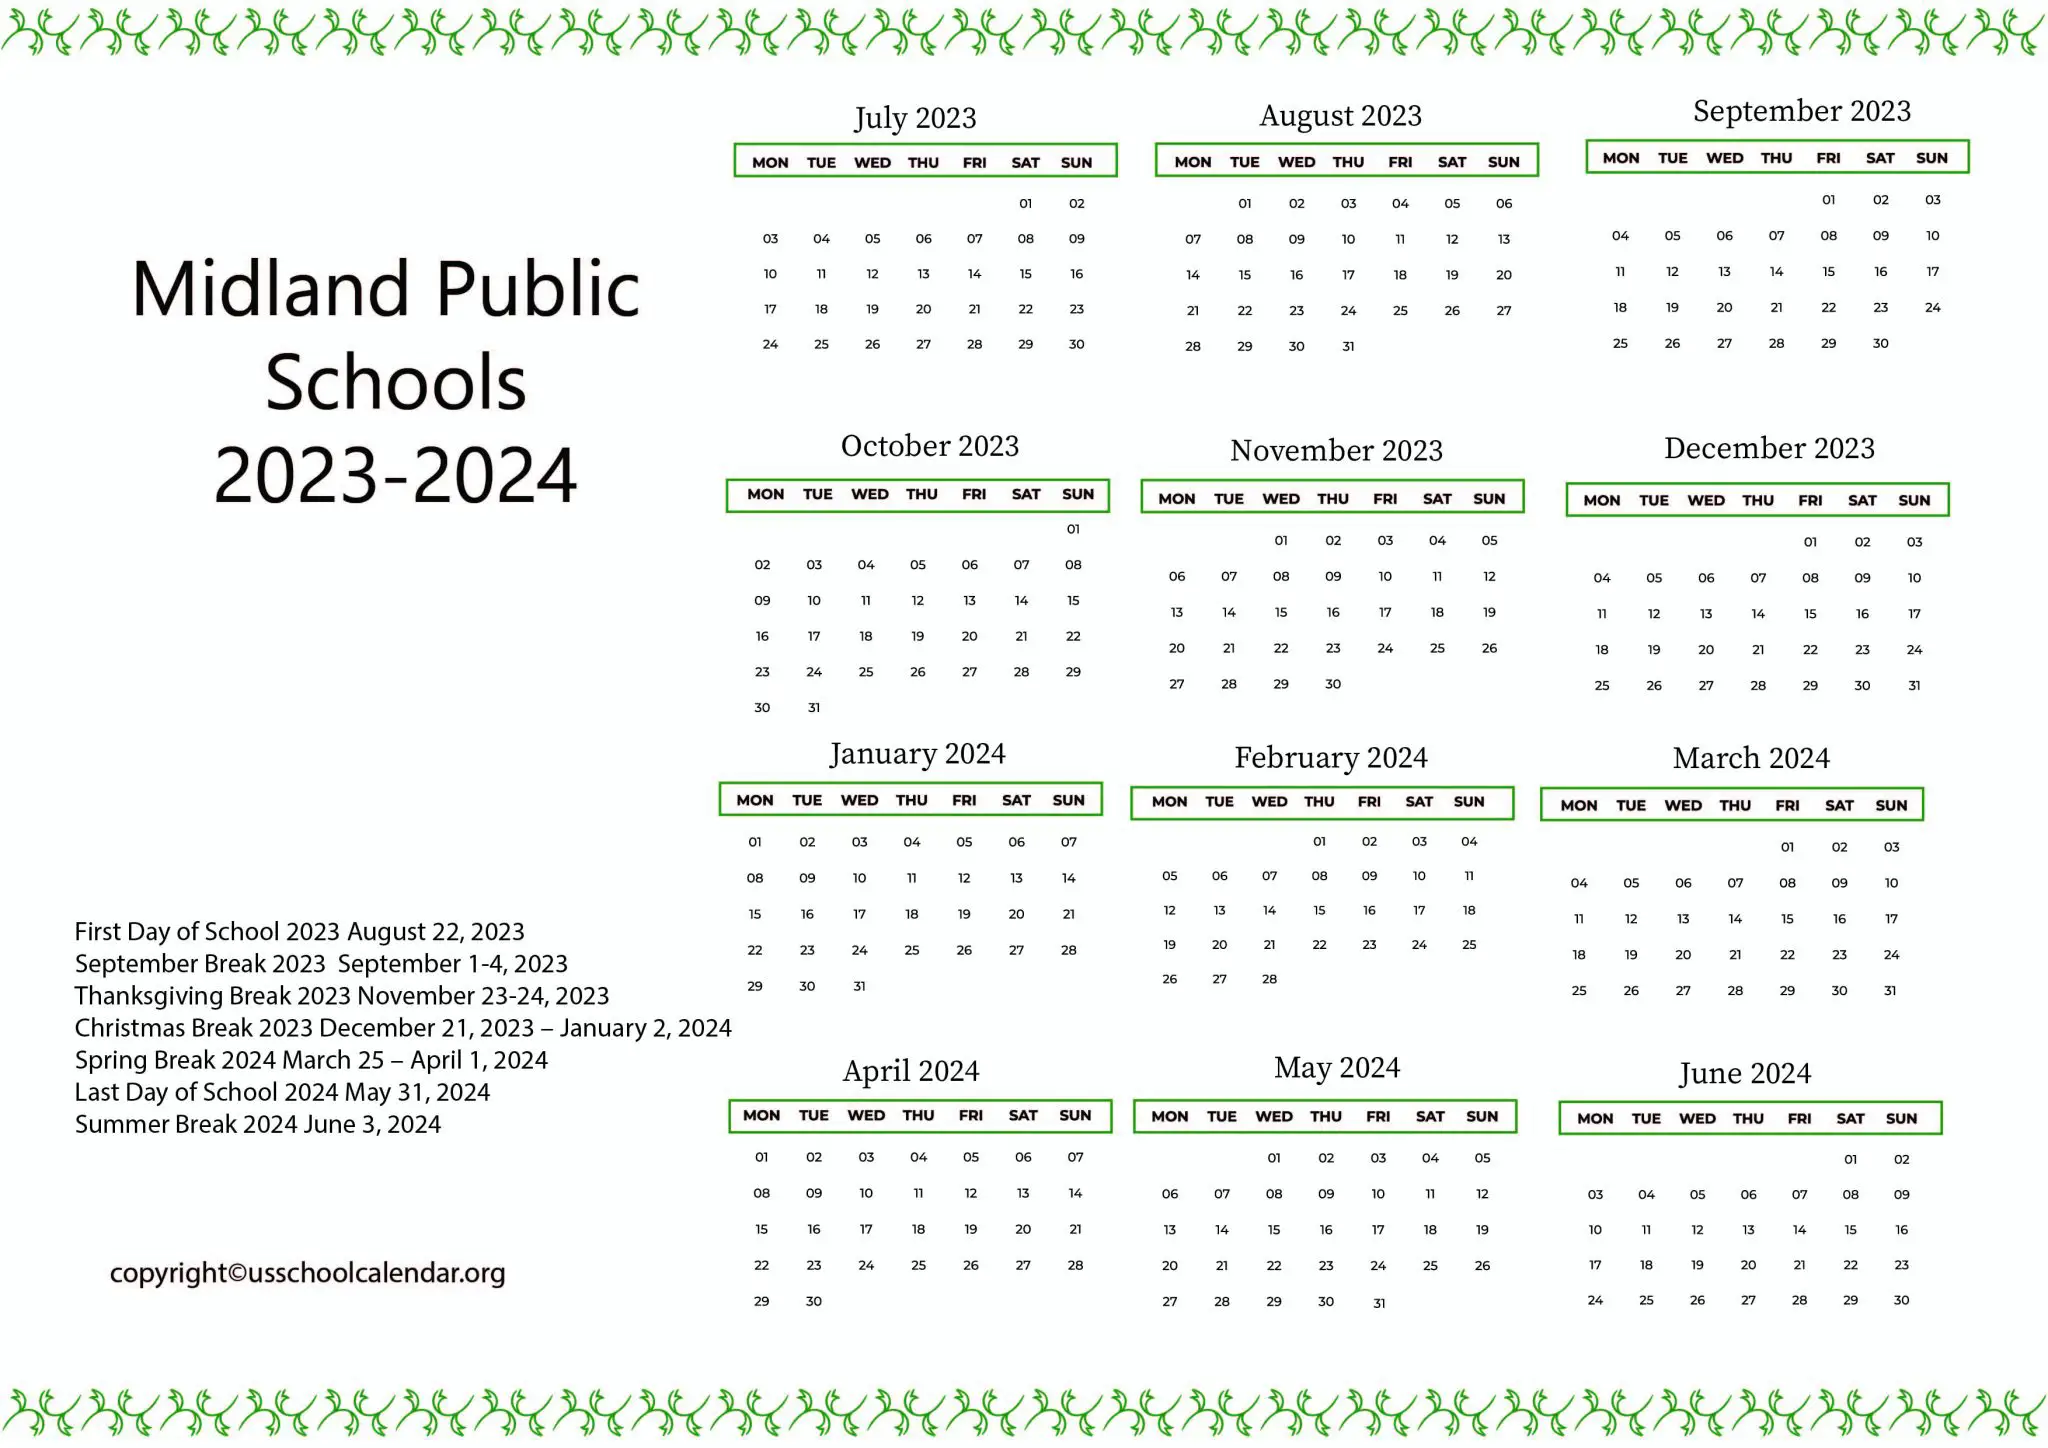 Midland Public Schools Calendar with Holidays 2023-2024